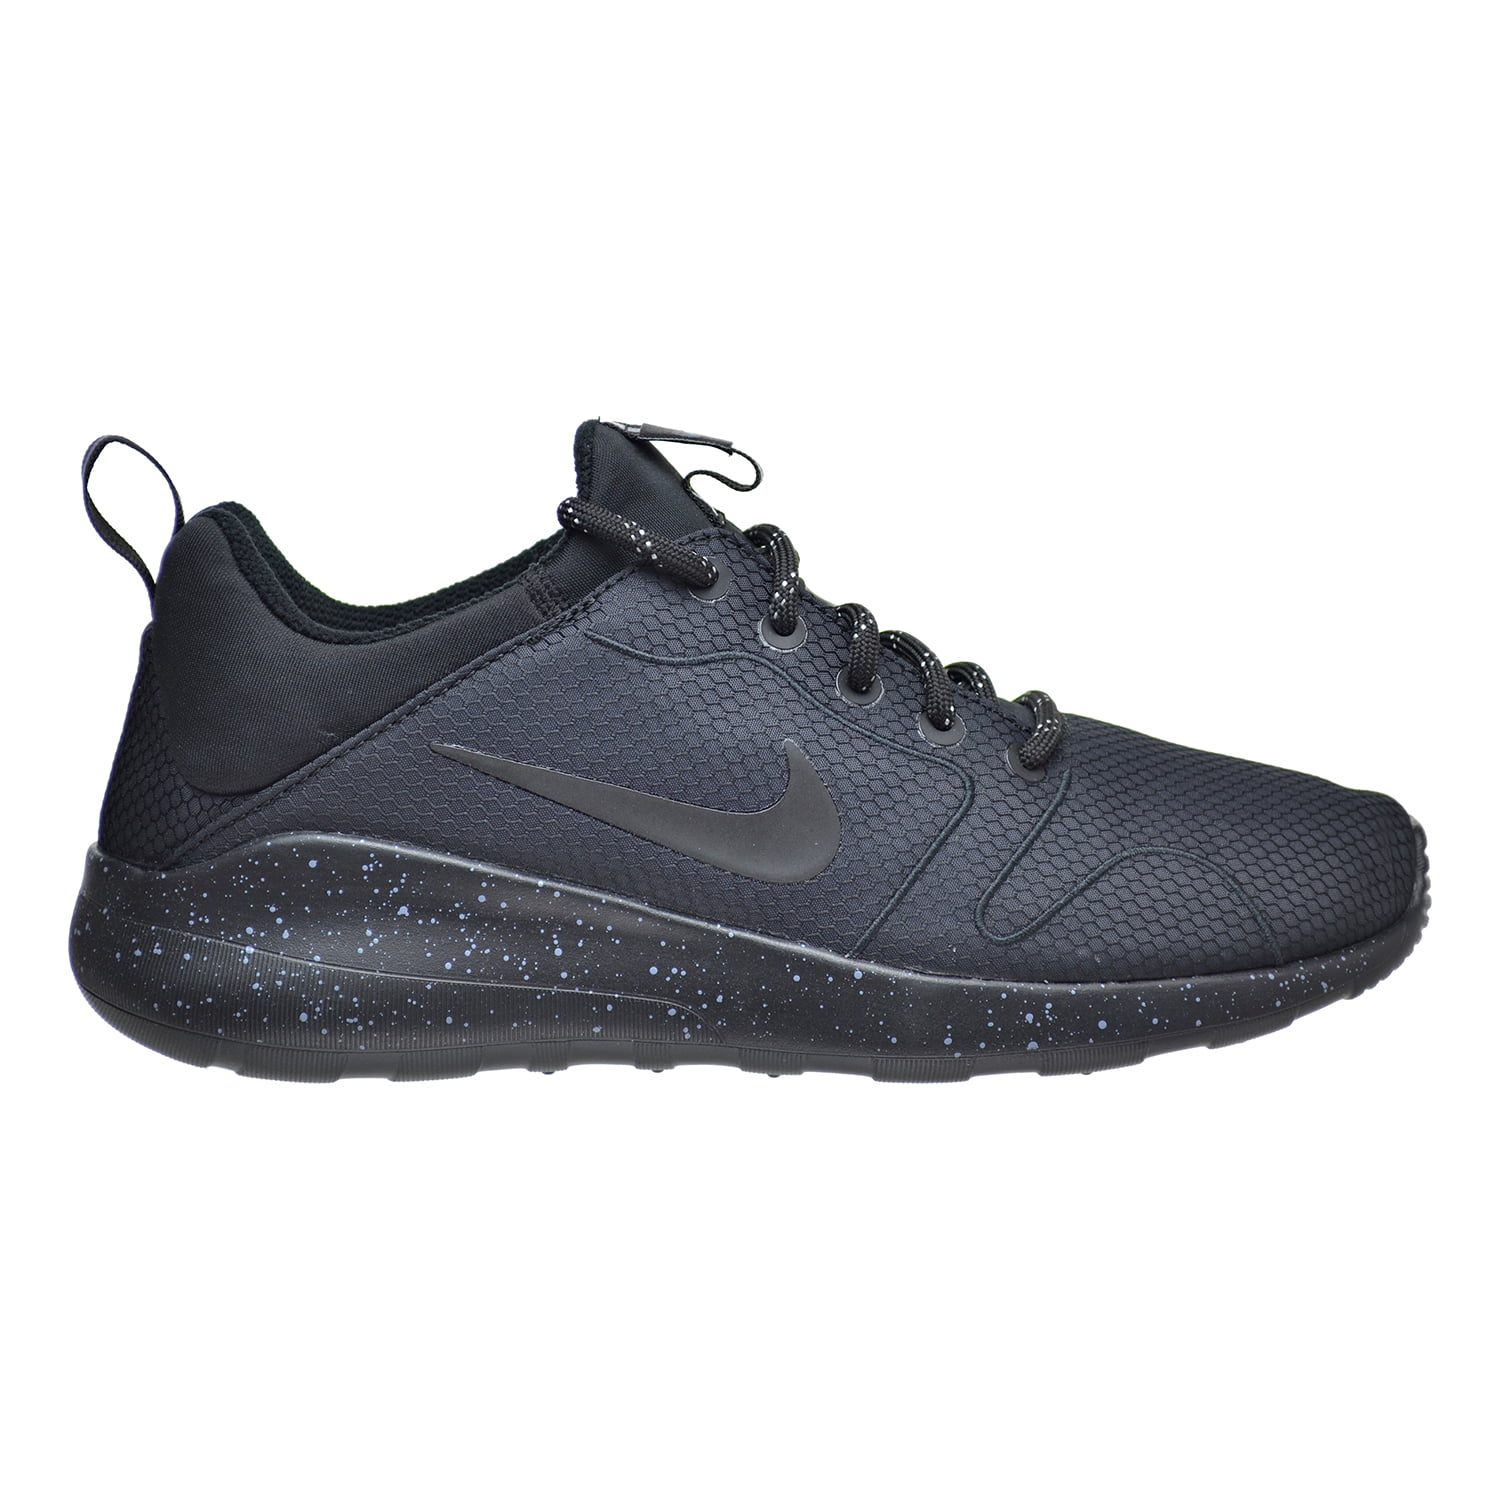 Nike Kaishi 2.0 SE Men's Shoes Black/Black/Cool Grey 844838-001 (8.5 D(M) US) Walmart.com